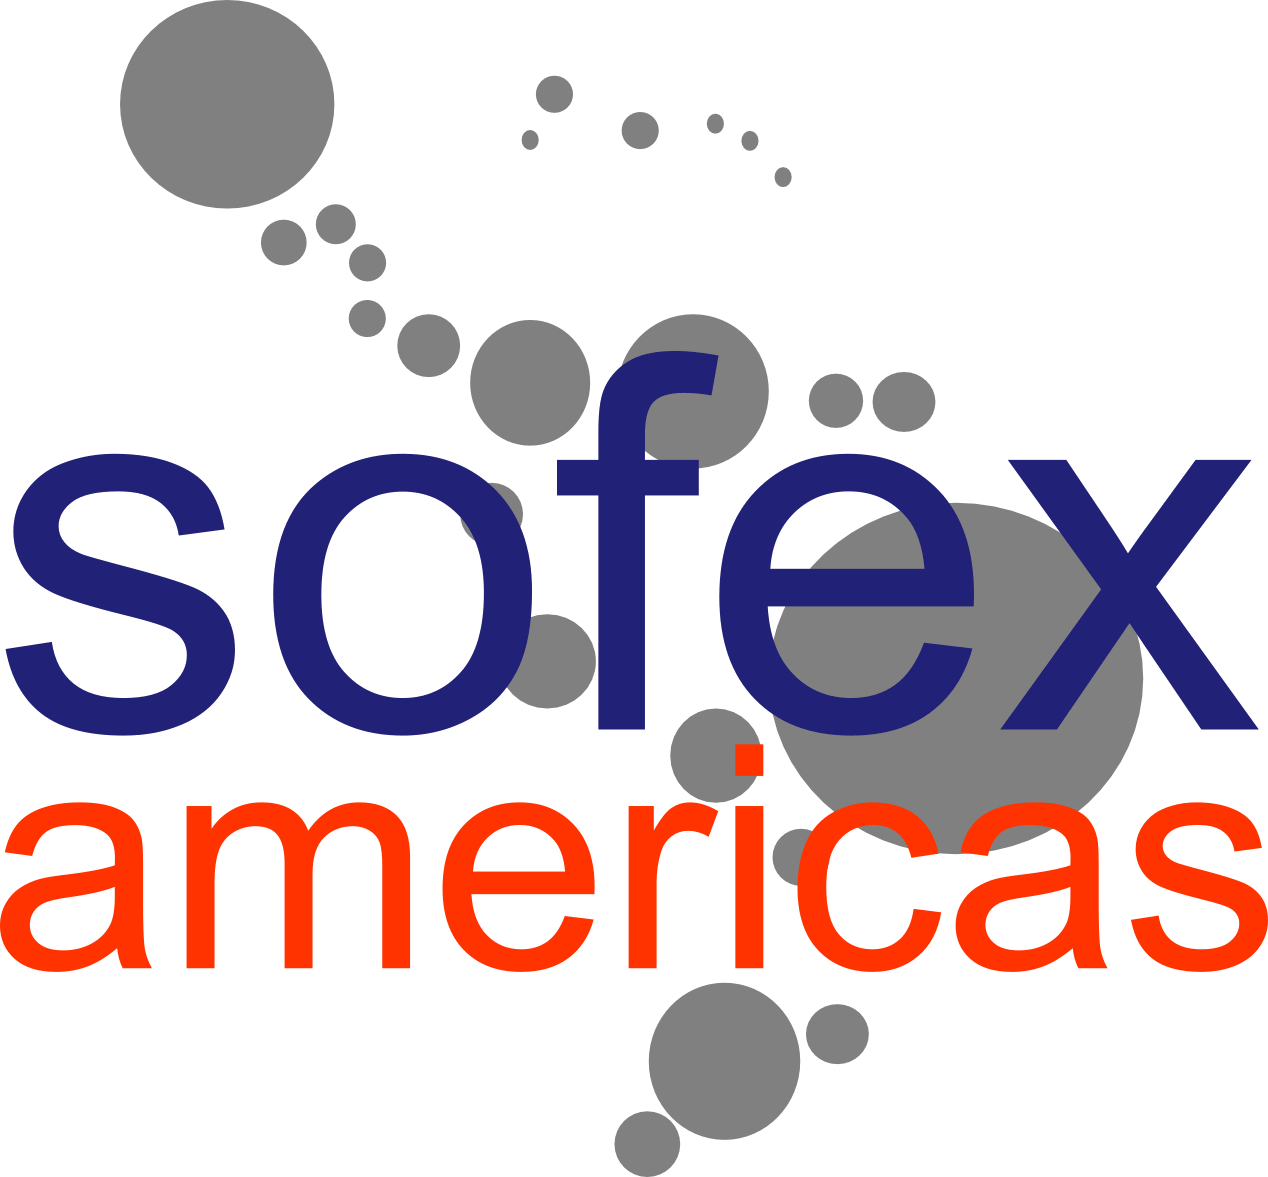 Sofex Americas logo